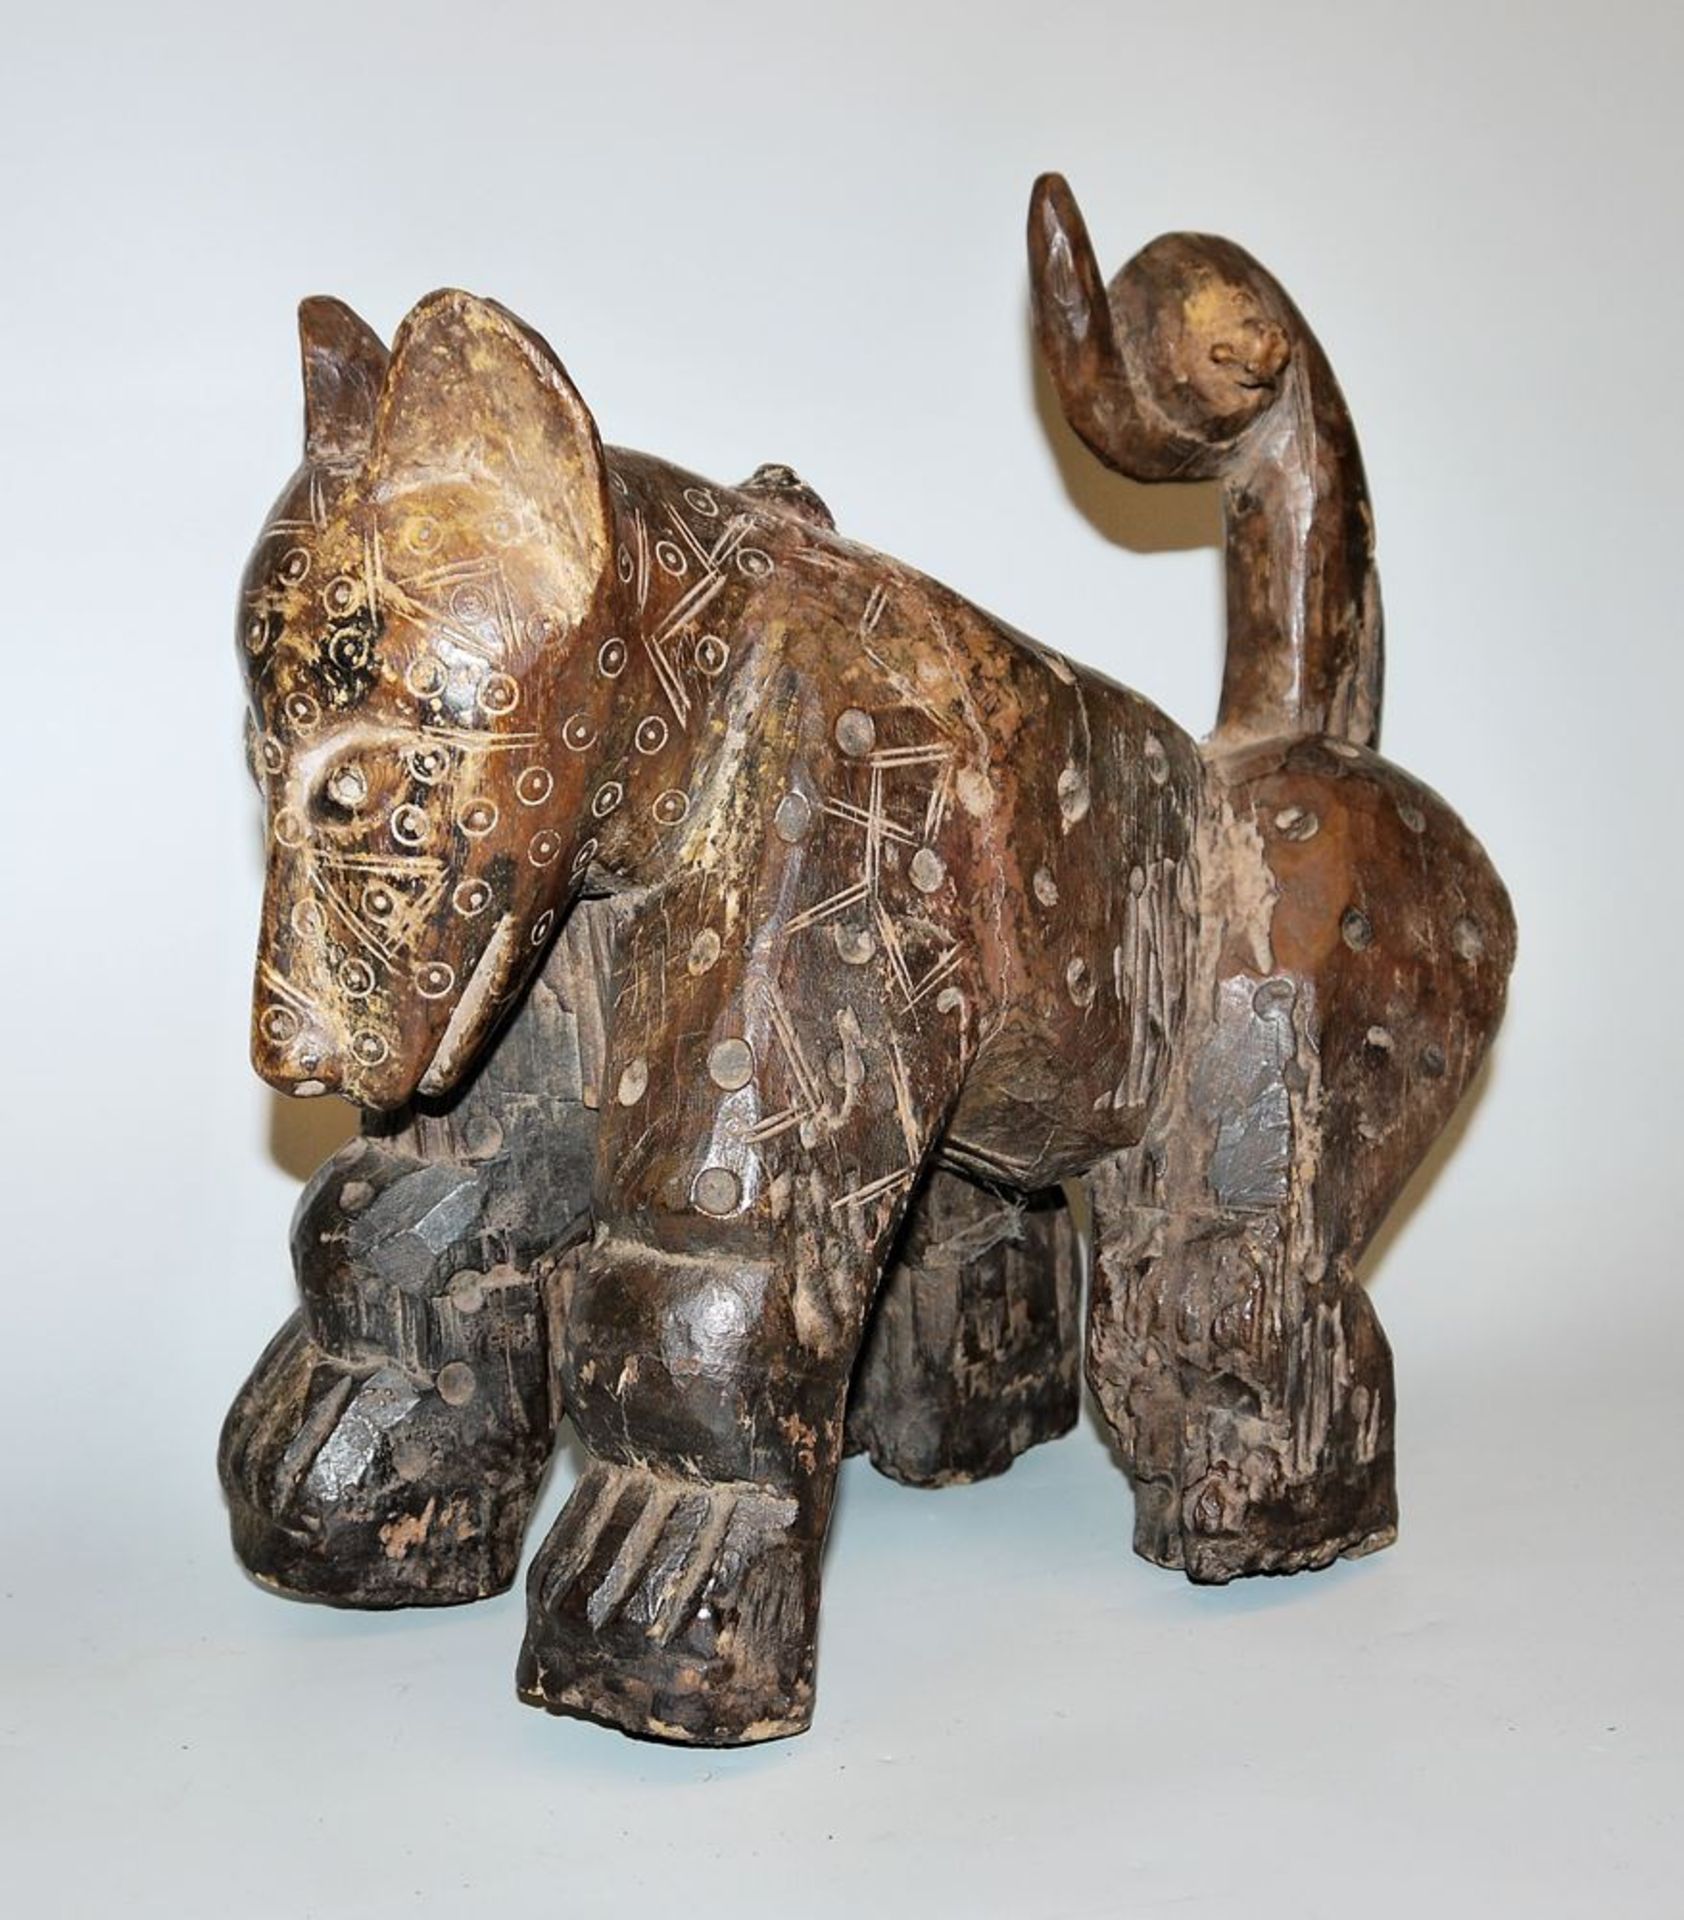 Sculpture of a dog, Lega, Northeast Congo